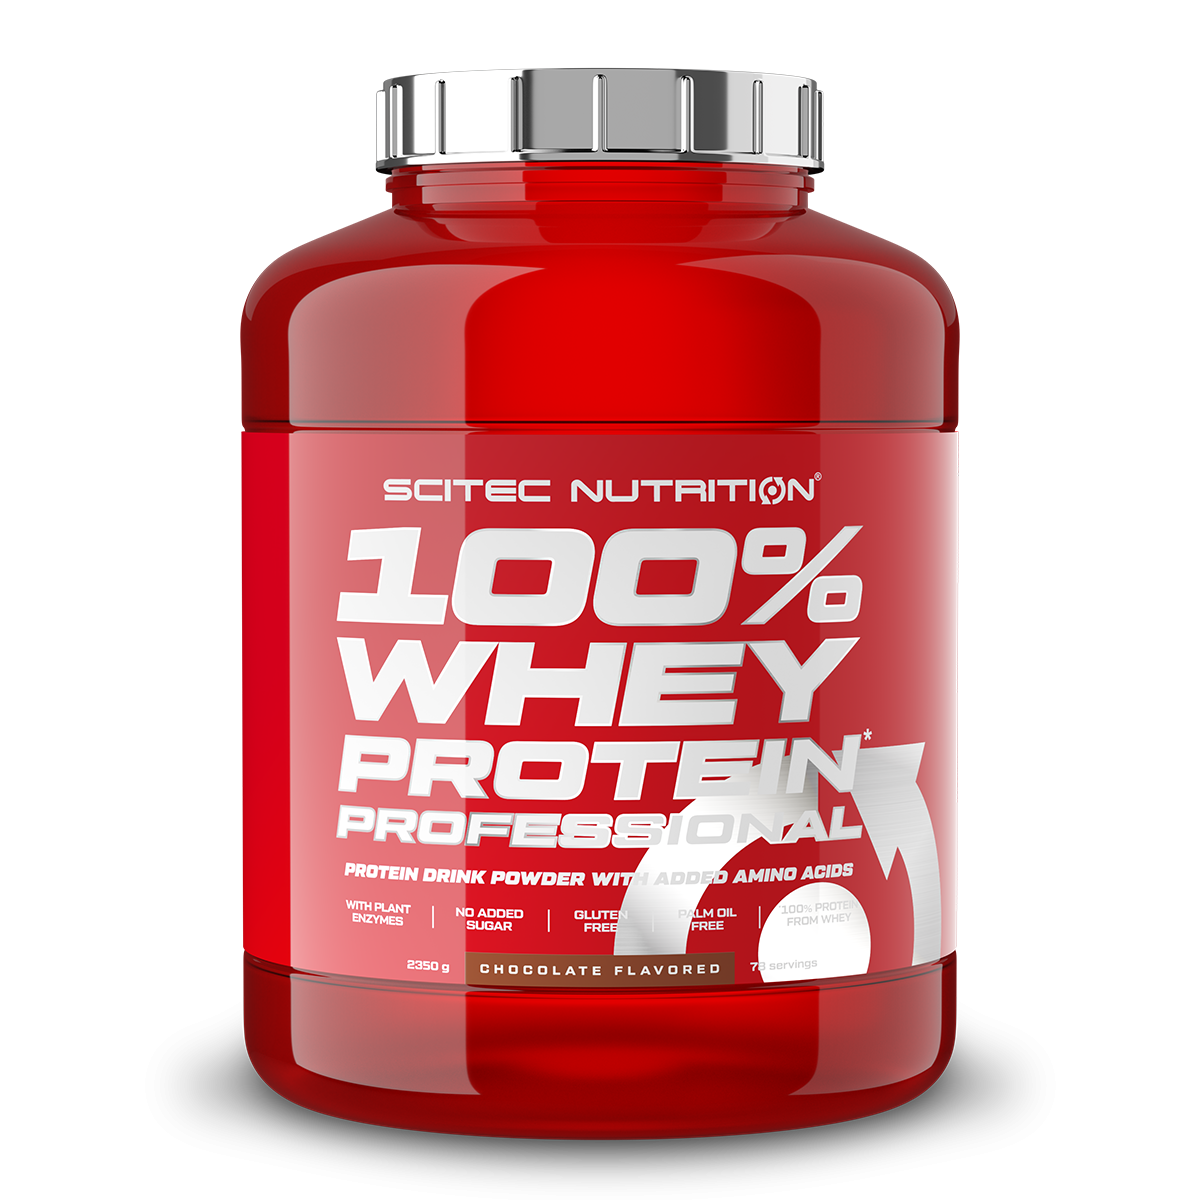 Scitec Nutrition 100% Whey Protein Professional mit extra zusätzlichen Aminosäuren und Verdauungsenzymen, Beinhaltet keinen Zuckerzusatz, 2.35 kg, Vanille